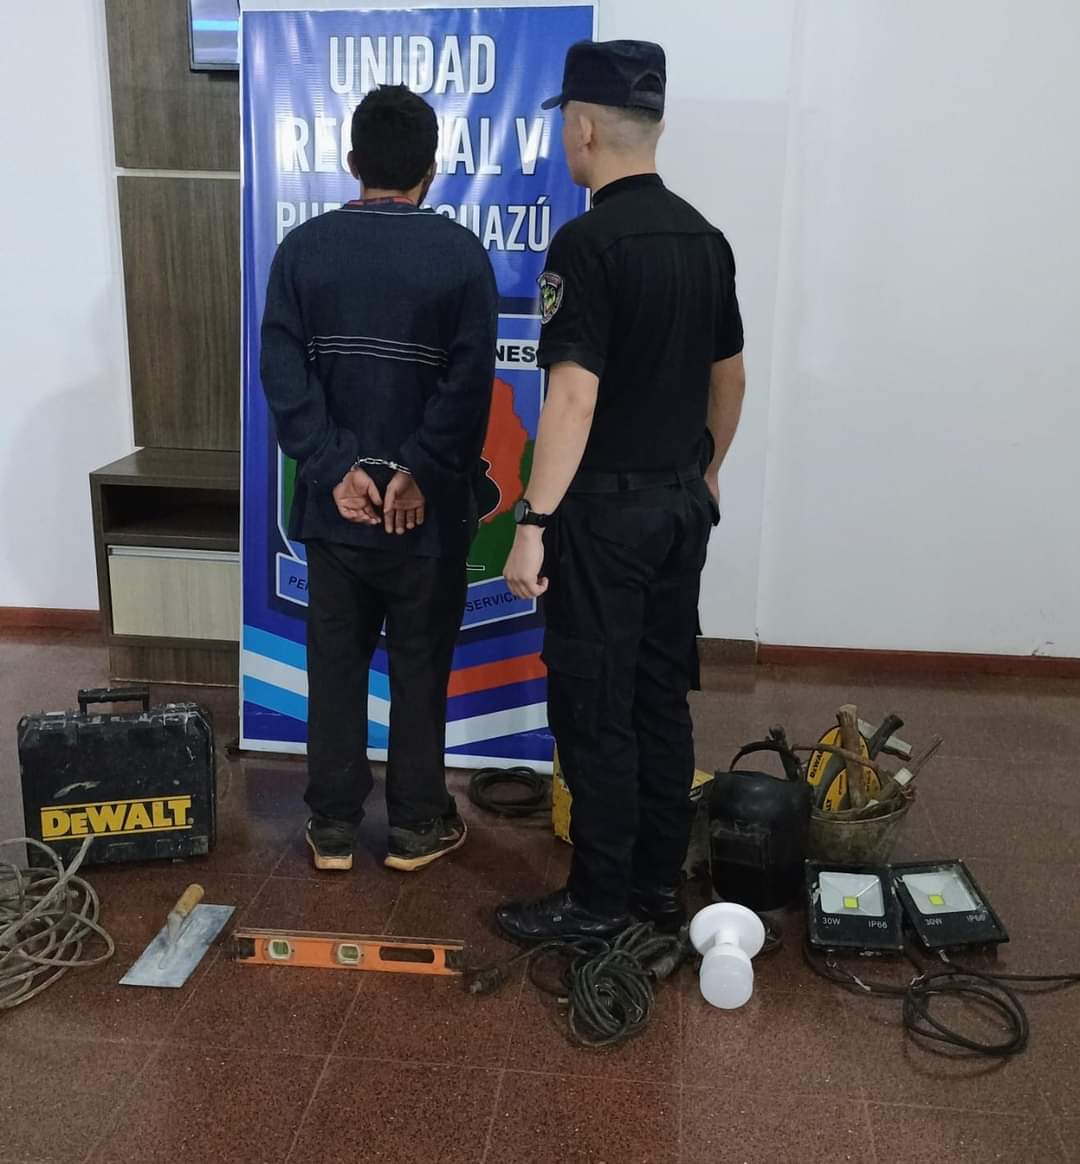 Investigadores recuperaron herramientas robadas de un hotel en Iguazú